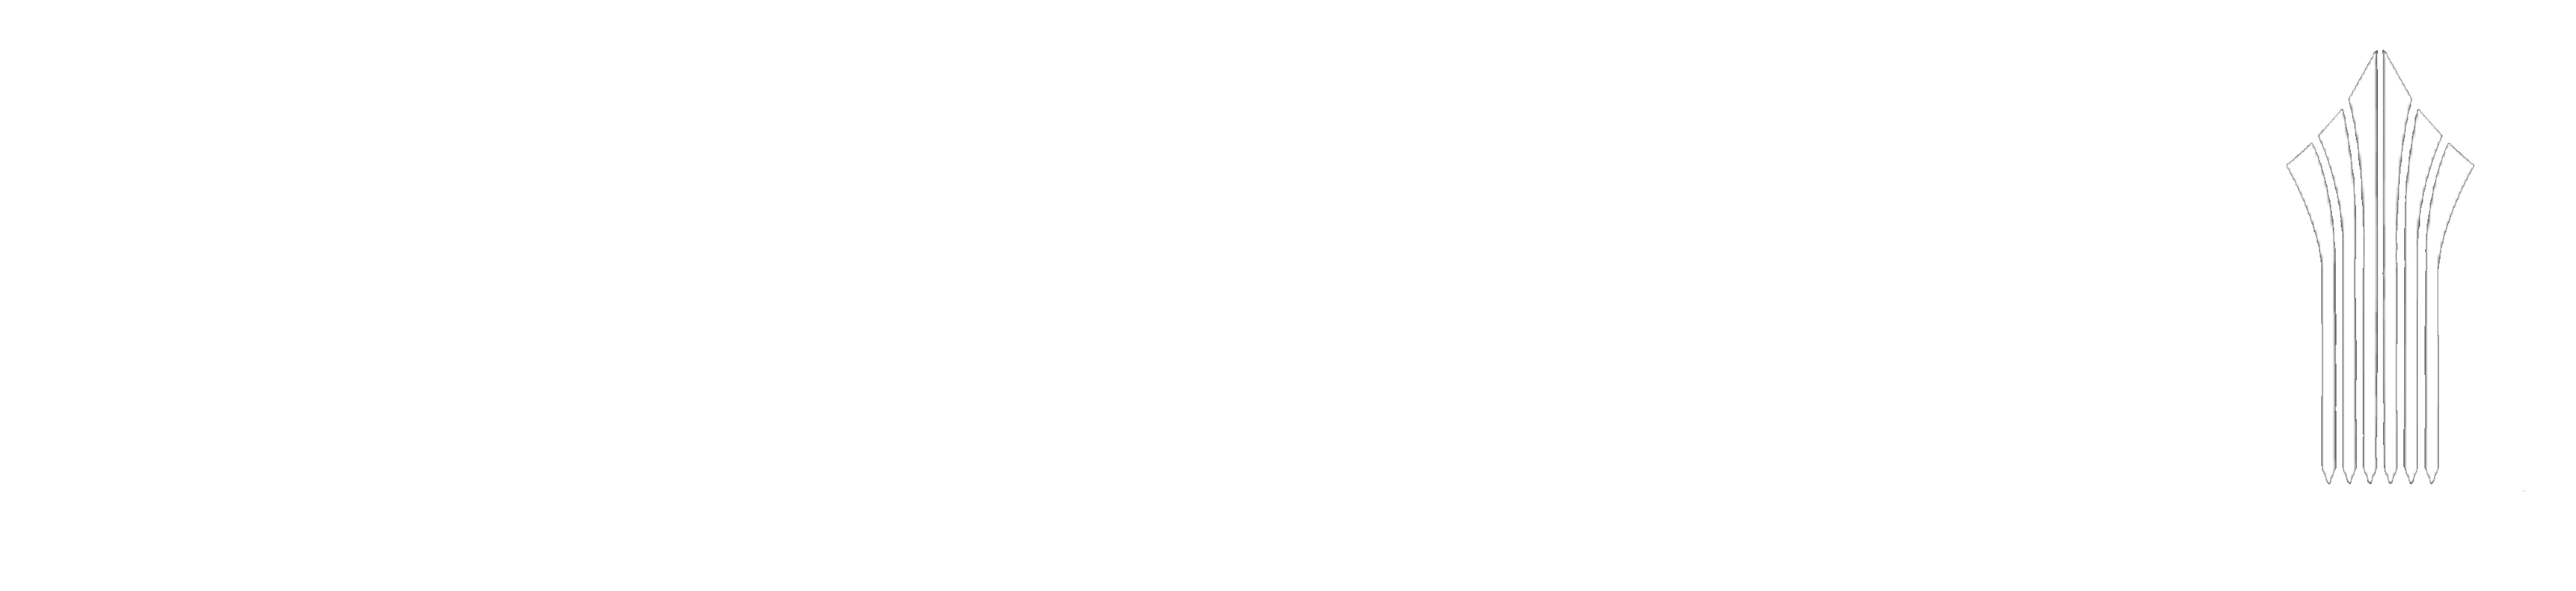 مرکز آموش علمی کاربردی شهرداری مشهد